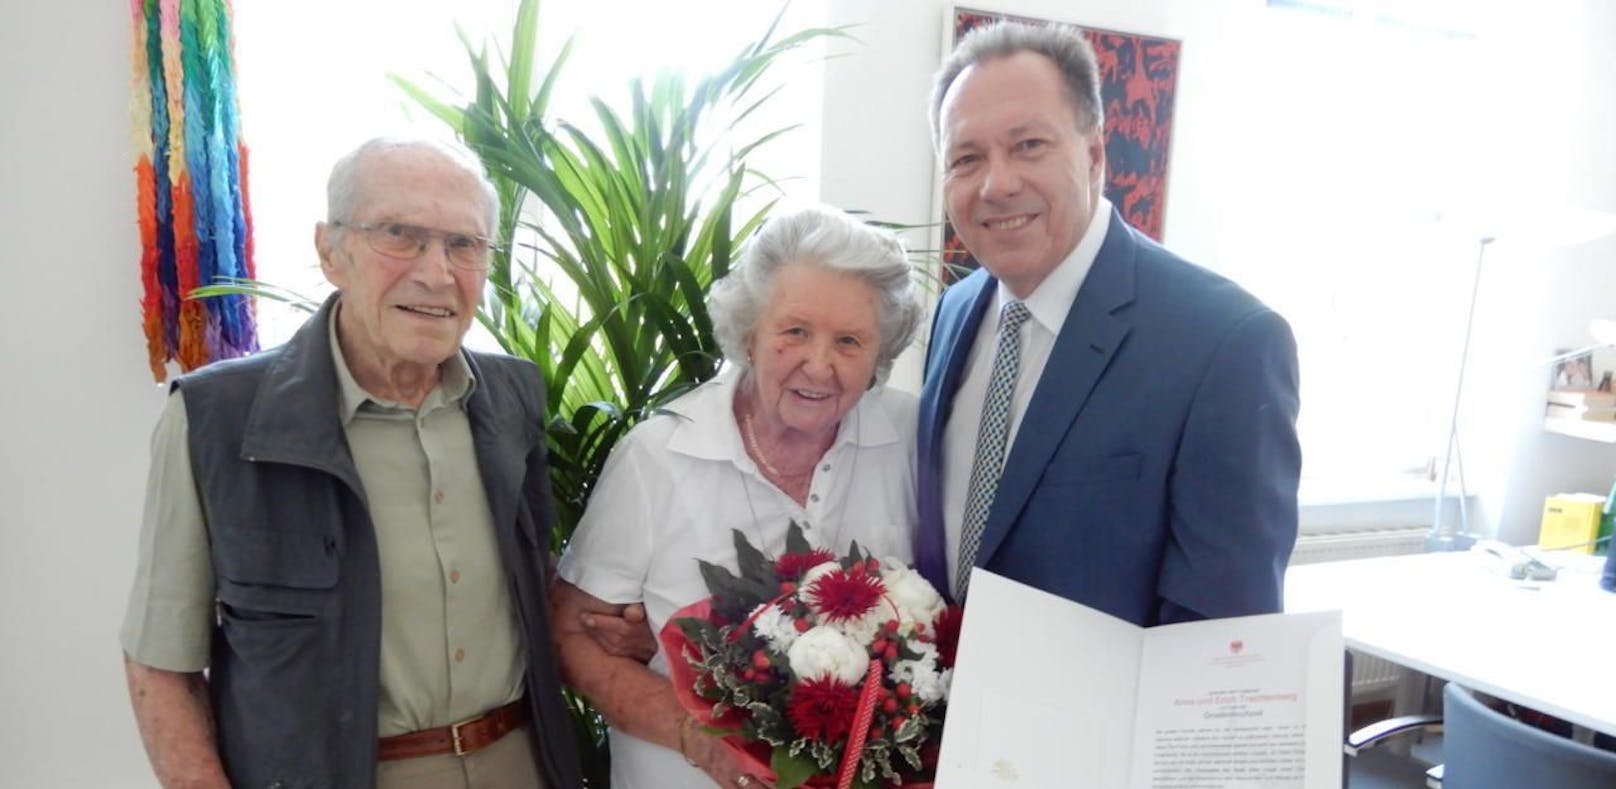 70 Jahre verheiratet: Ottakrings Bezirksvorsteher Prokop gratulierte.           